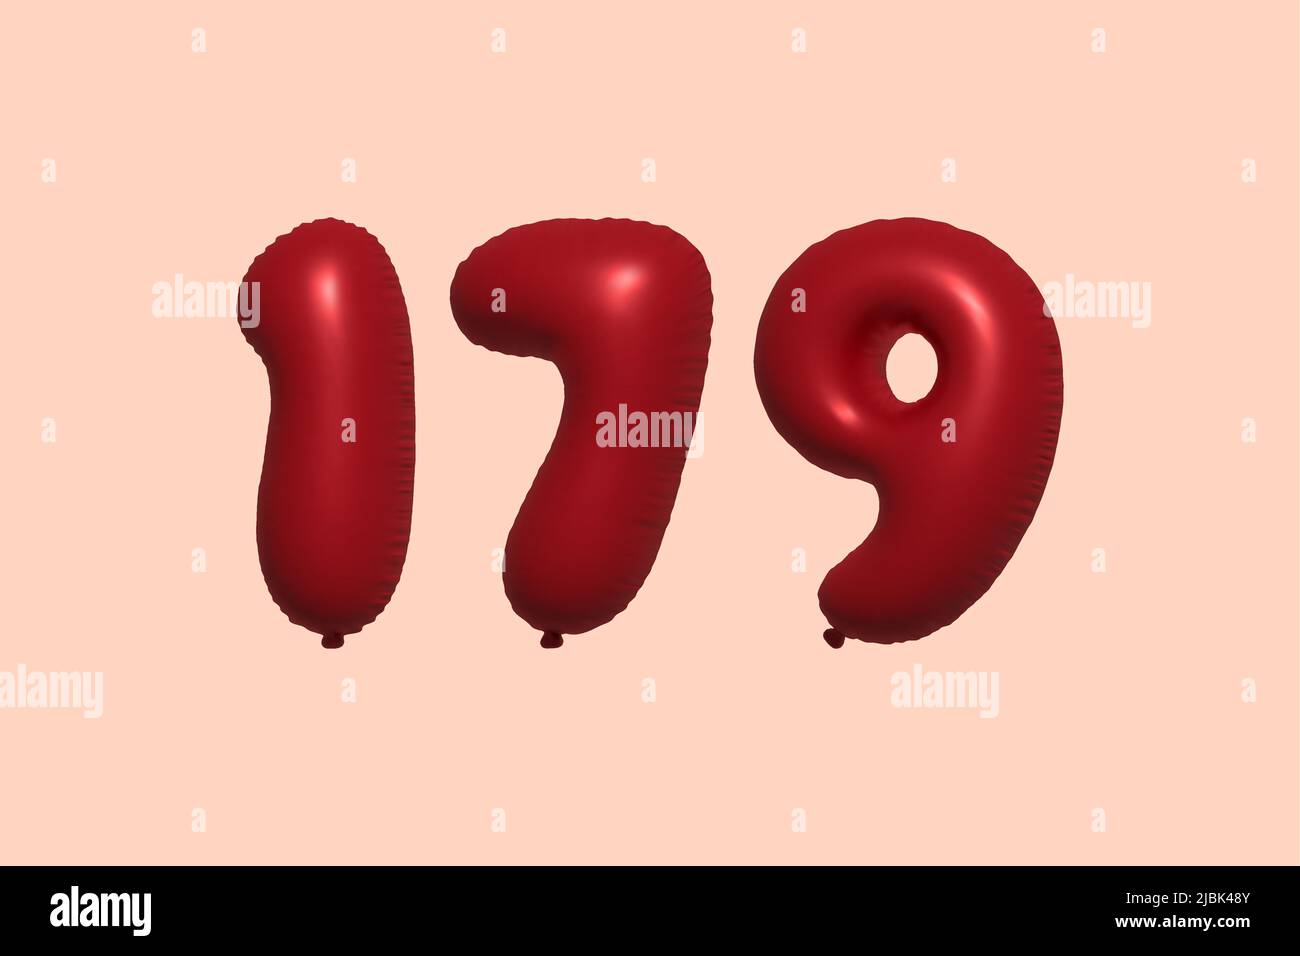 ballon à 178 3d chiffres en ballon d'air métallique réaliste rendu 3d. 3D ballons rouges à l'hélium à vendre décoration Fête anniversaire, célébration anniversaire, mariage vacances. Illustration vectorielle Illustration de Vecteur